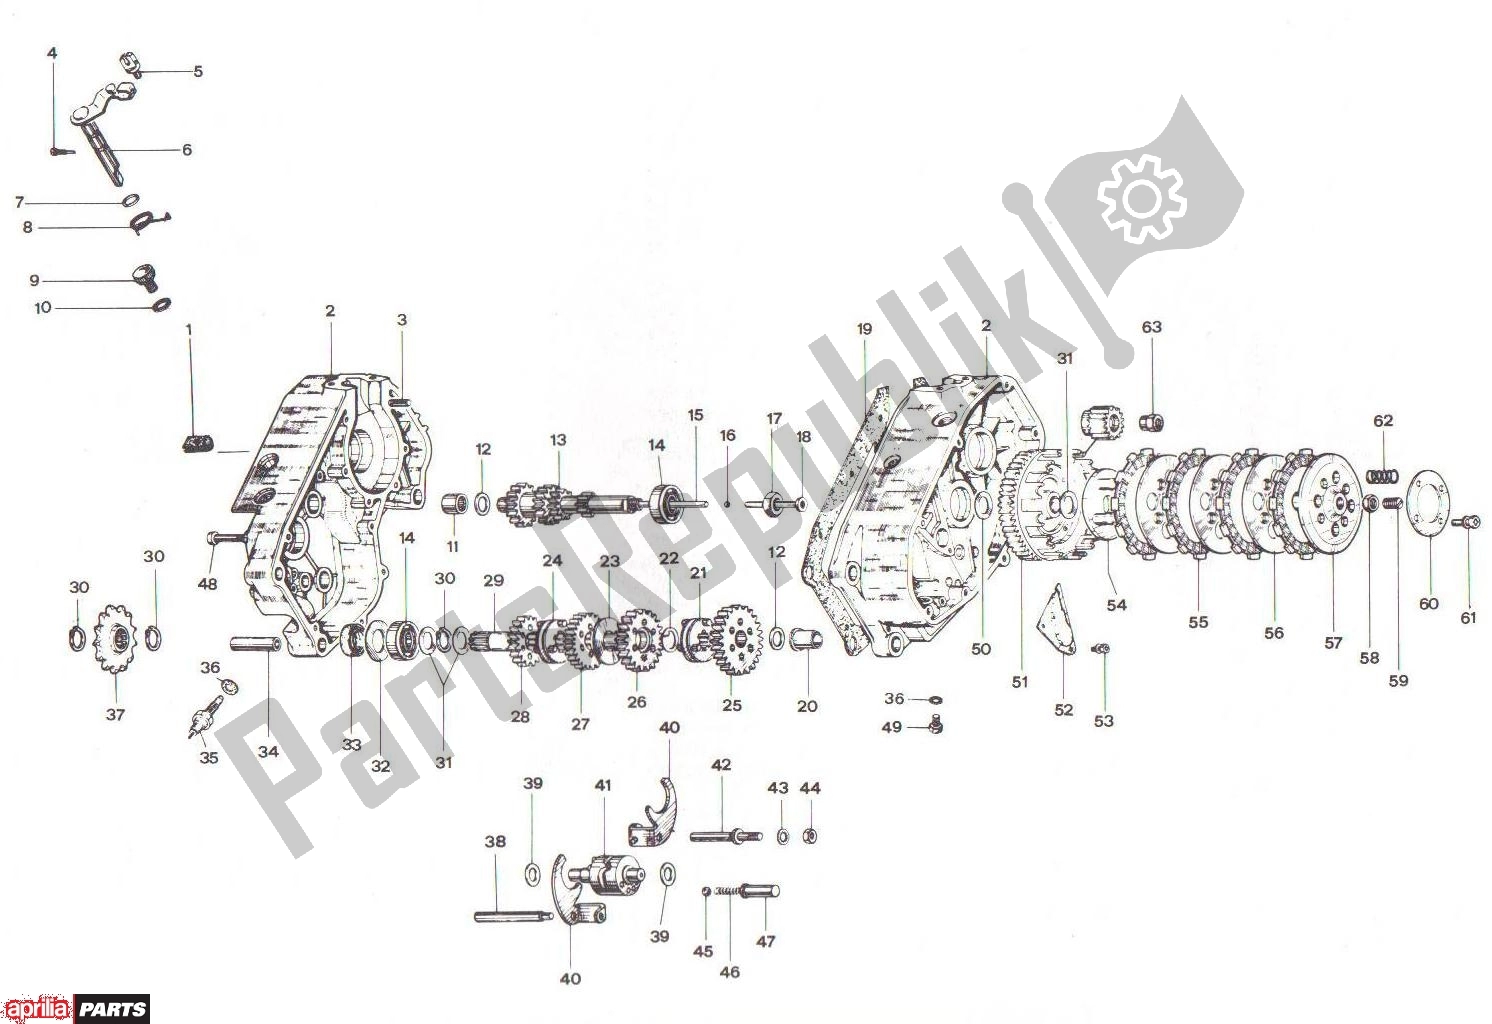 All parts for the Crankcase Clutch Transmission Basamento Frizione Cambio of the Aprilia RV3/4 700 50 1986 - 1992